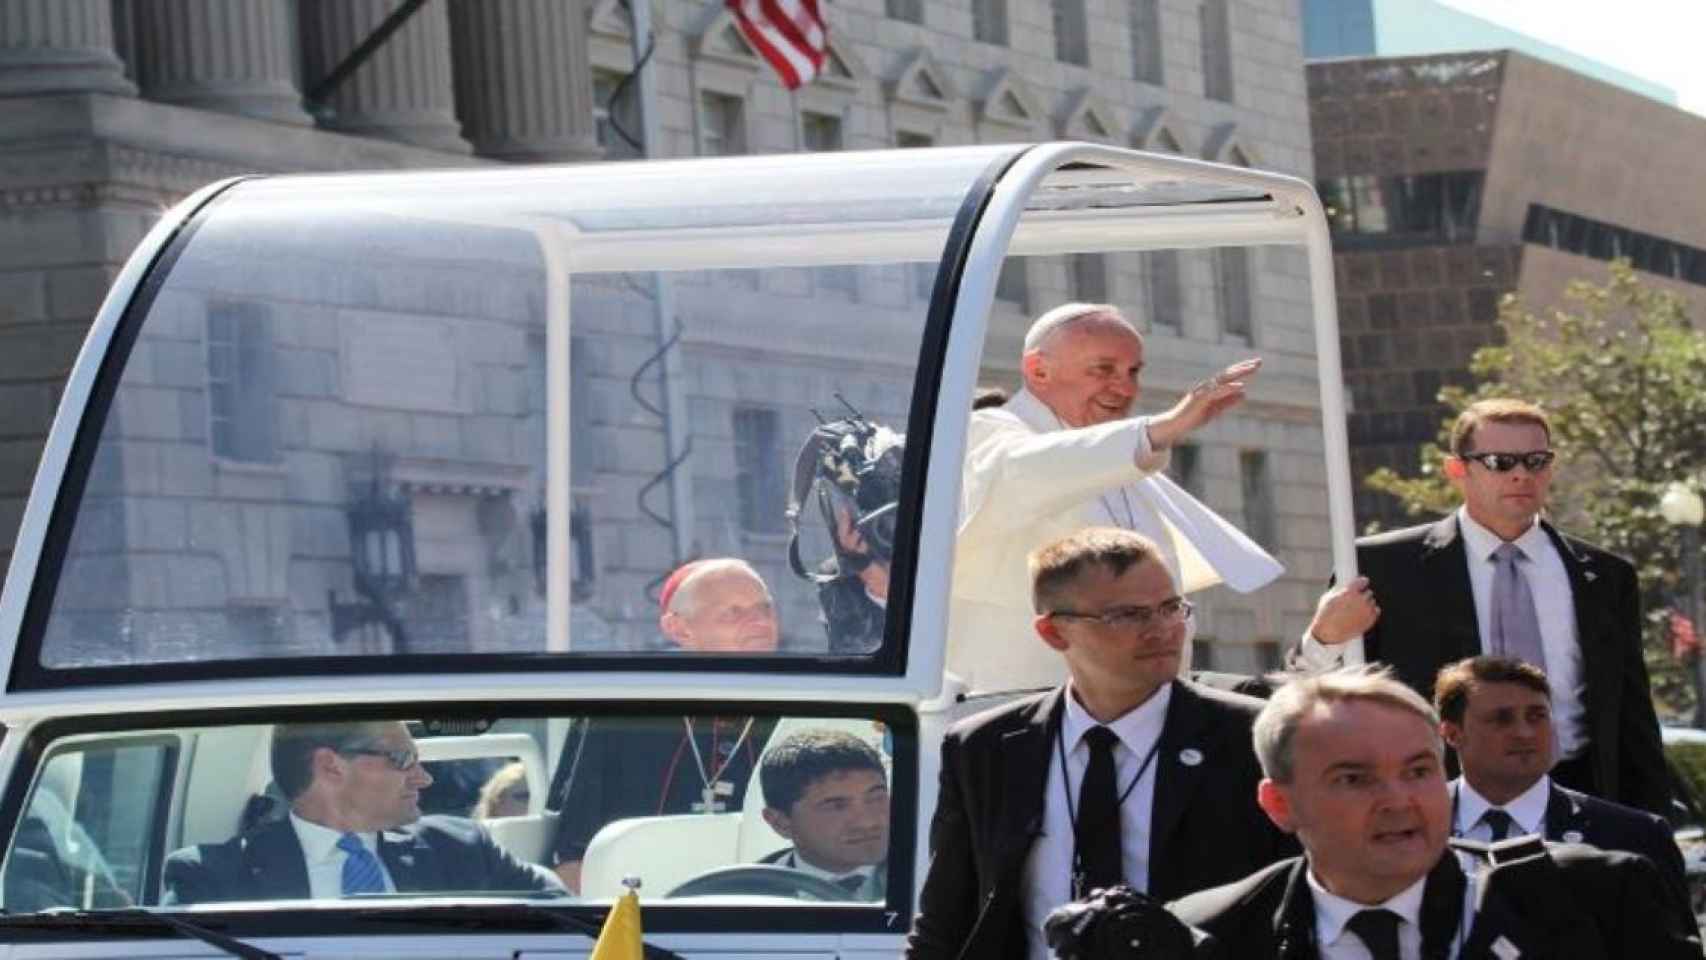 Imagen del Papa Francisco saludando a sus fieles / Mikdev en PIXABAY